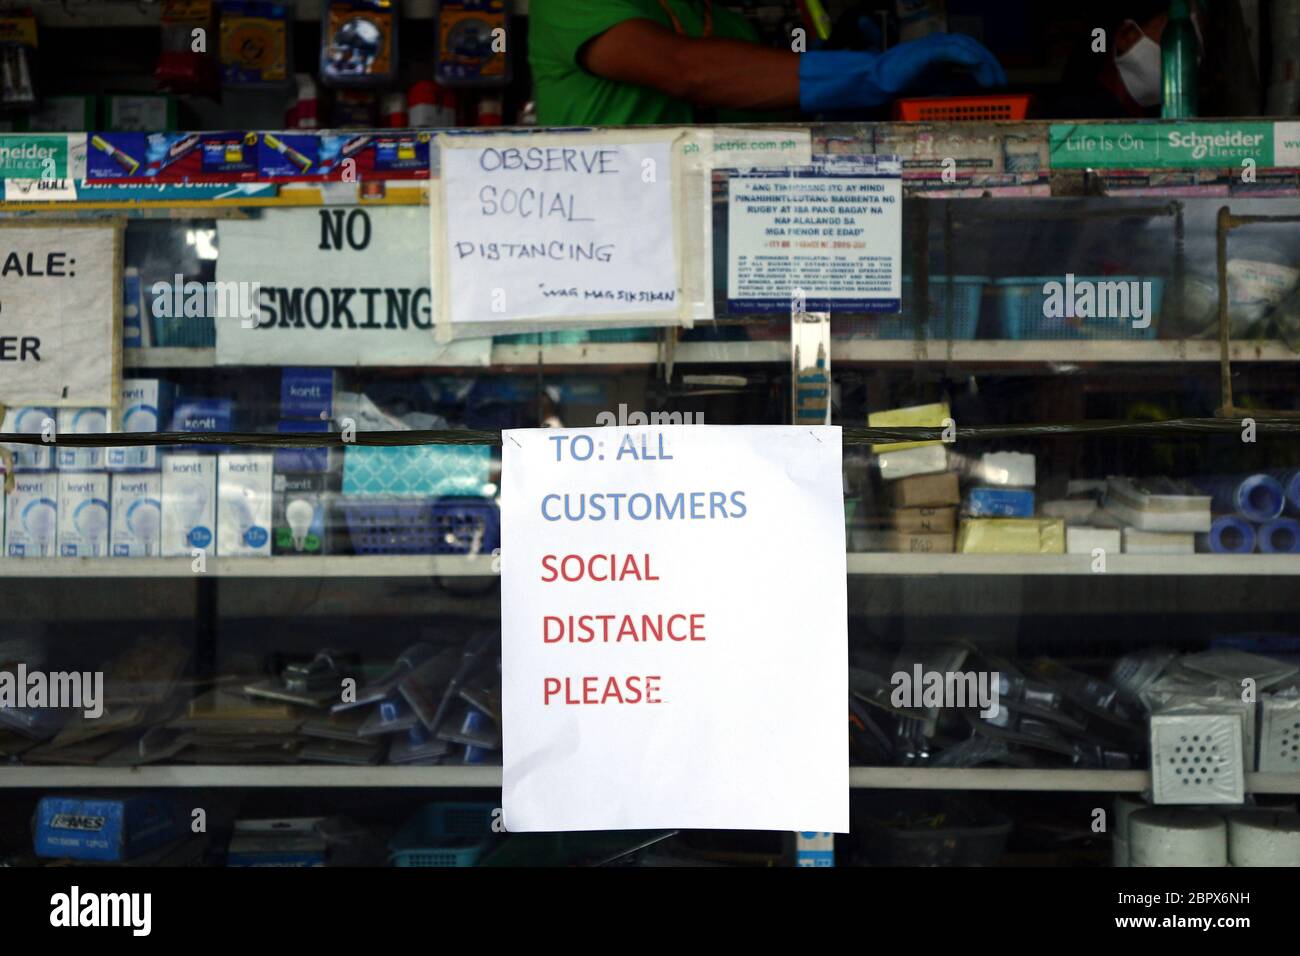 Antipolo City, Philippines - 16 mai 2020 : affichage social à distance à l'avant d'un magasin le premier jour où les affaires ont été autorisées à exploiter ag Banque D'Images